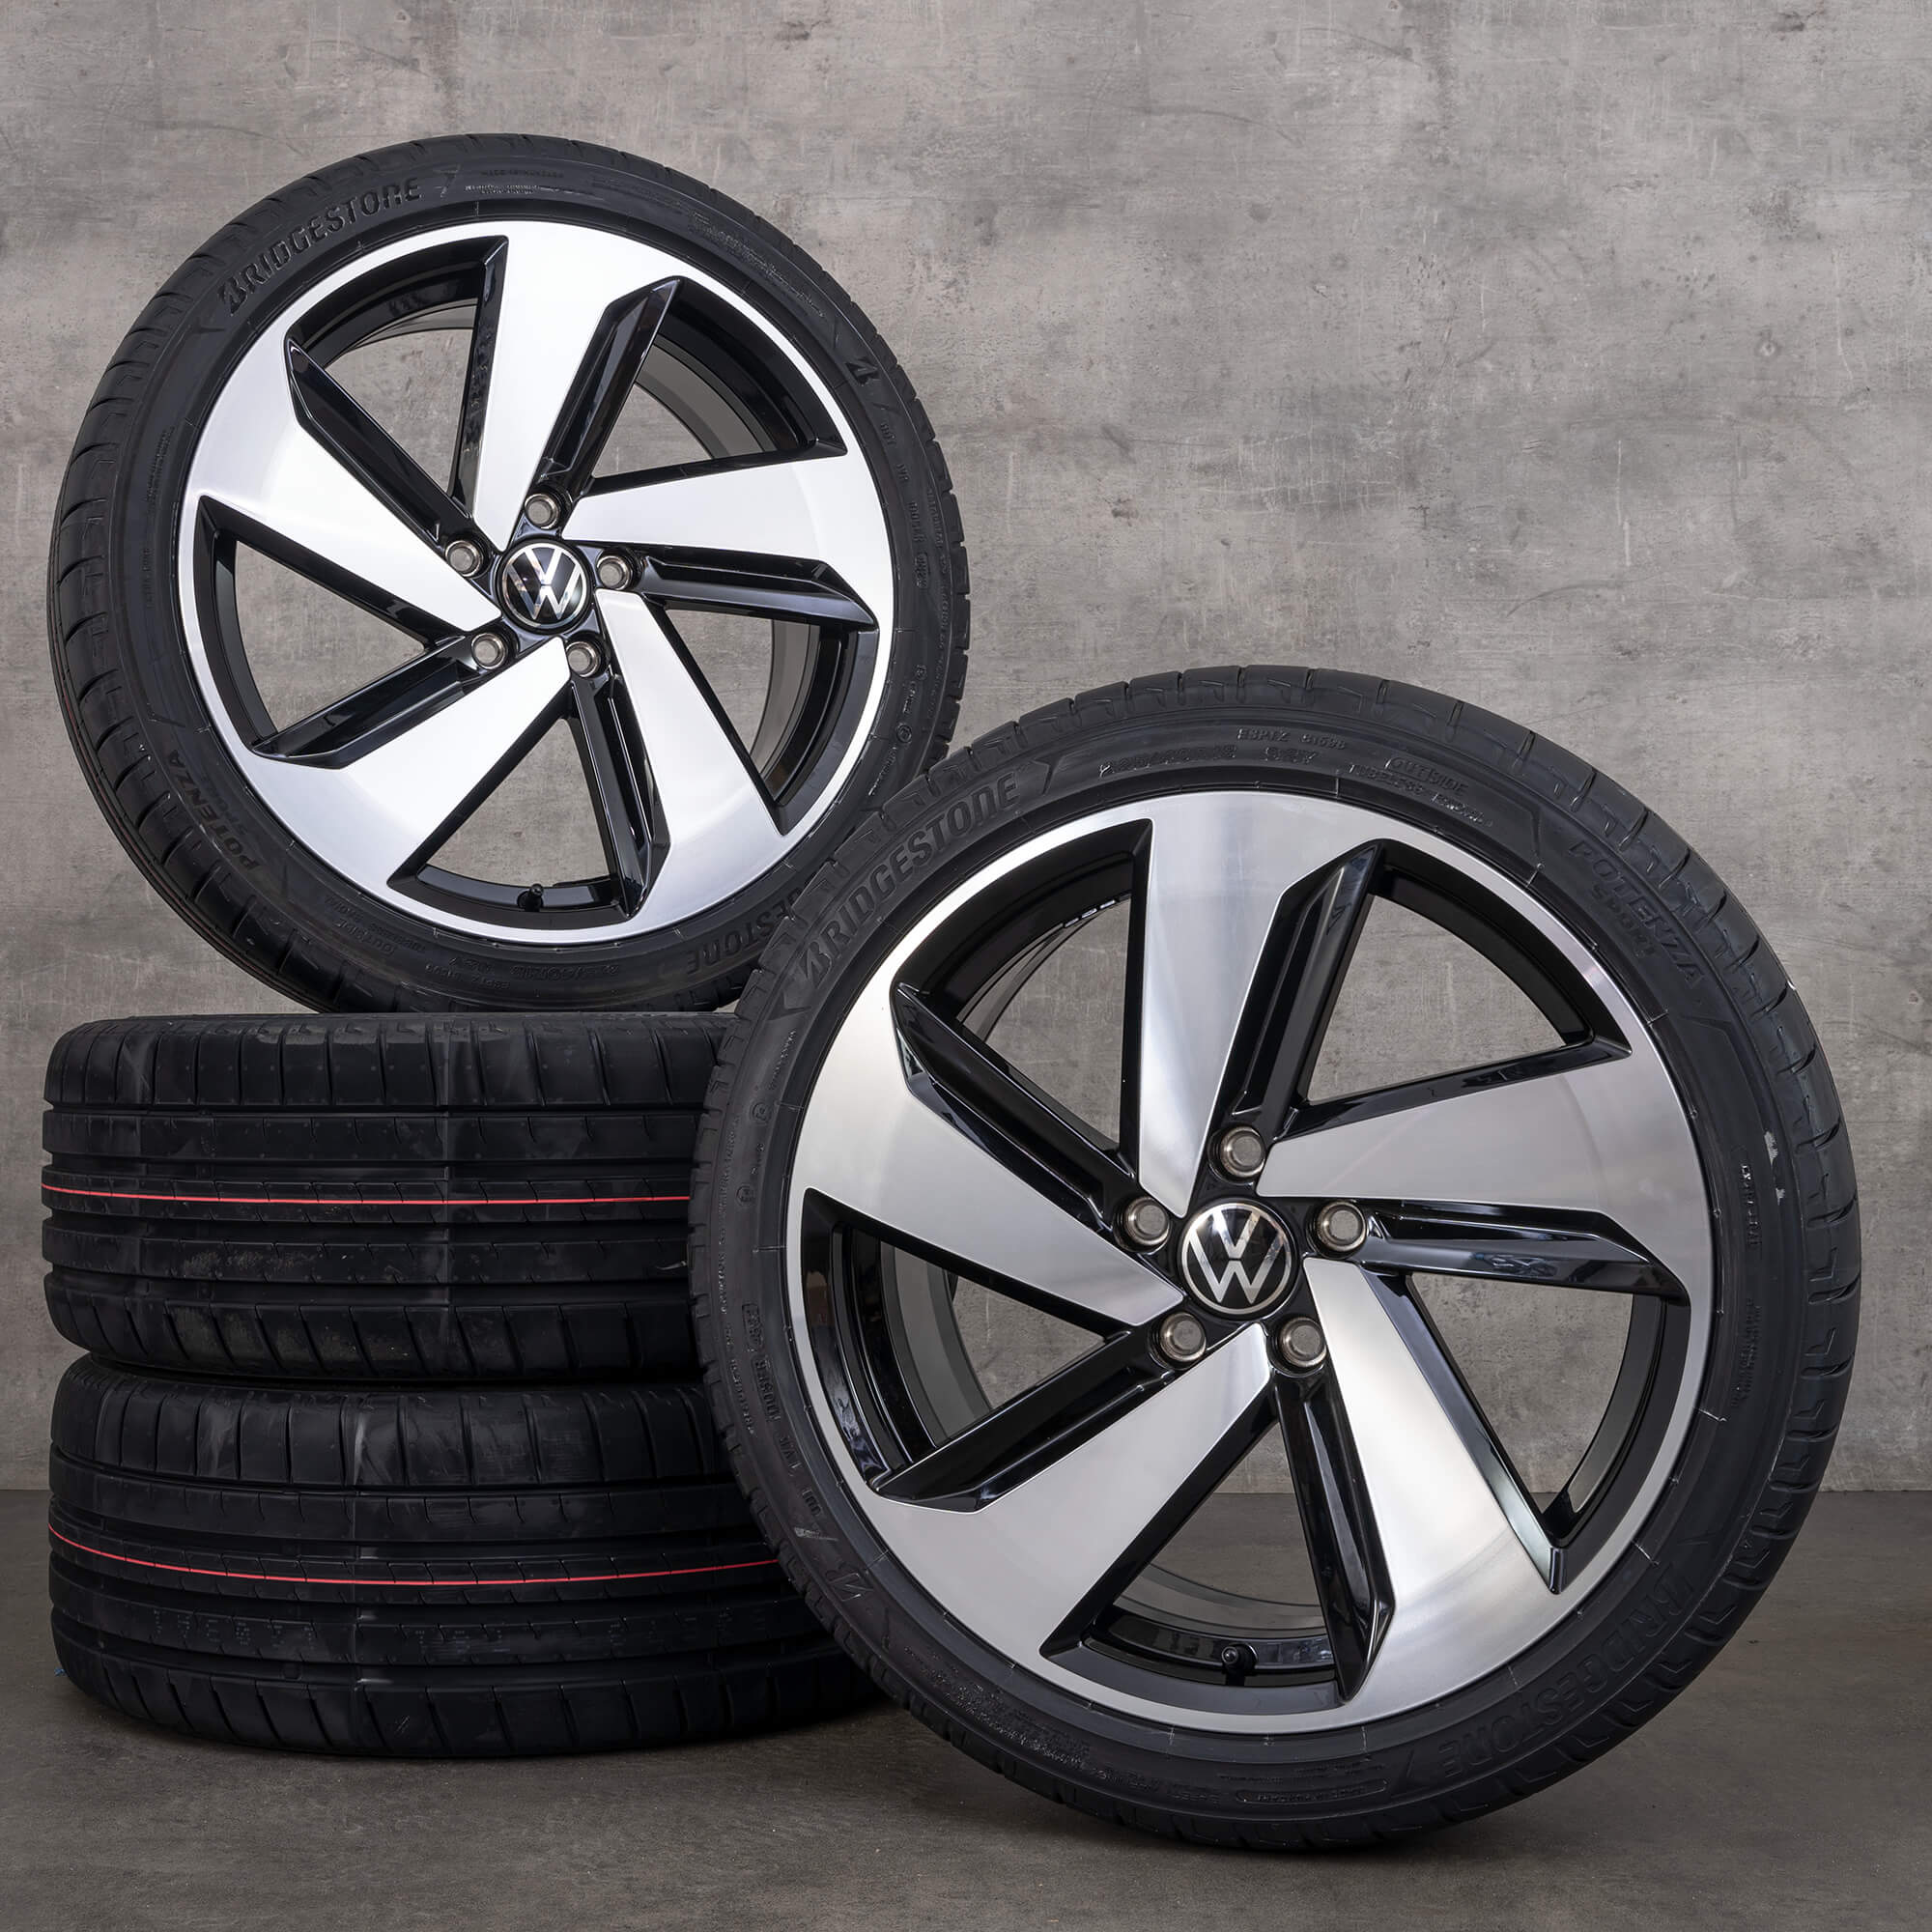 VW Golf 7 rims Milton Keynes 18 inch summer tires wheels 5GM601025Q NEW